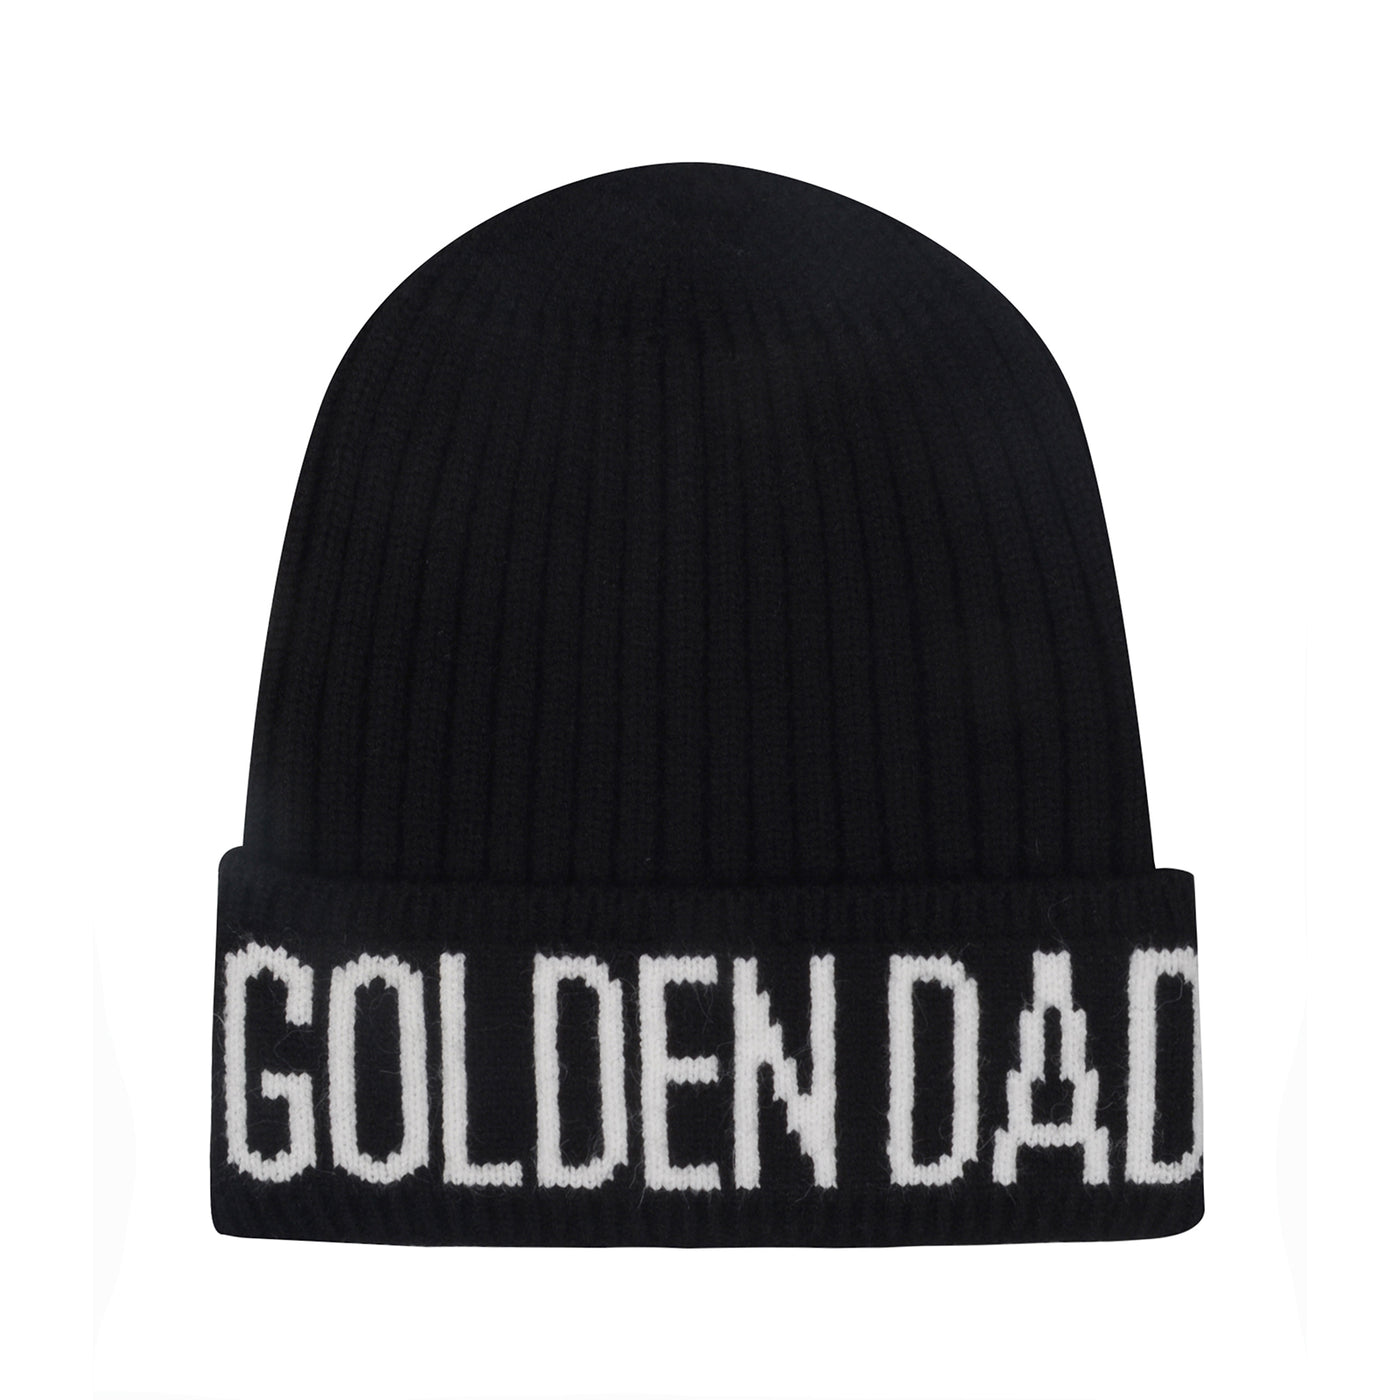 Hatphile Golden Dad Knit Beanie Toque